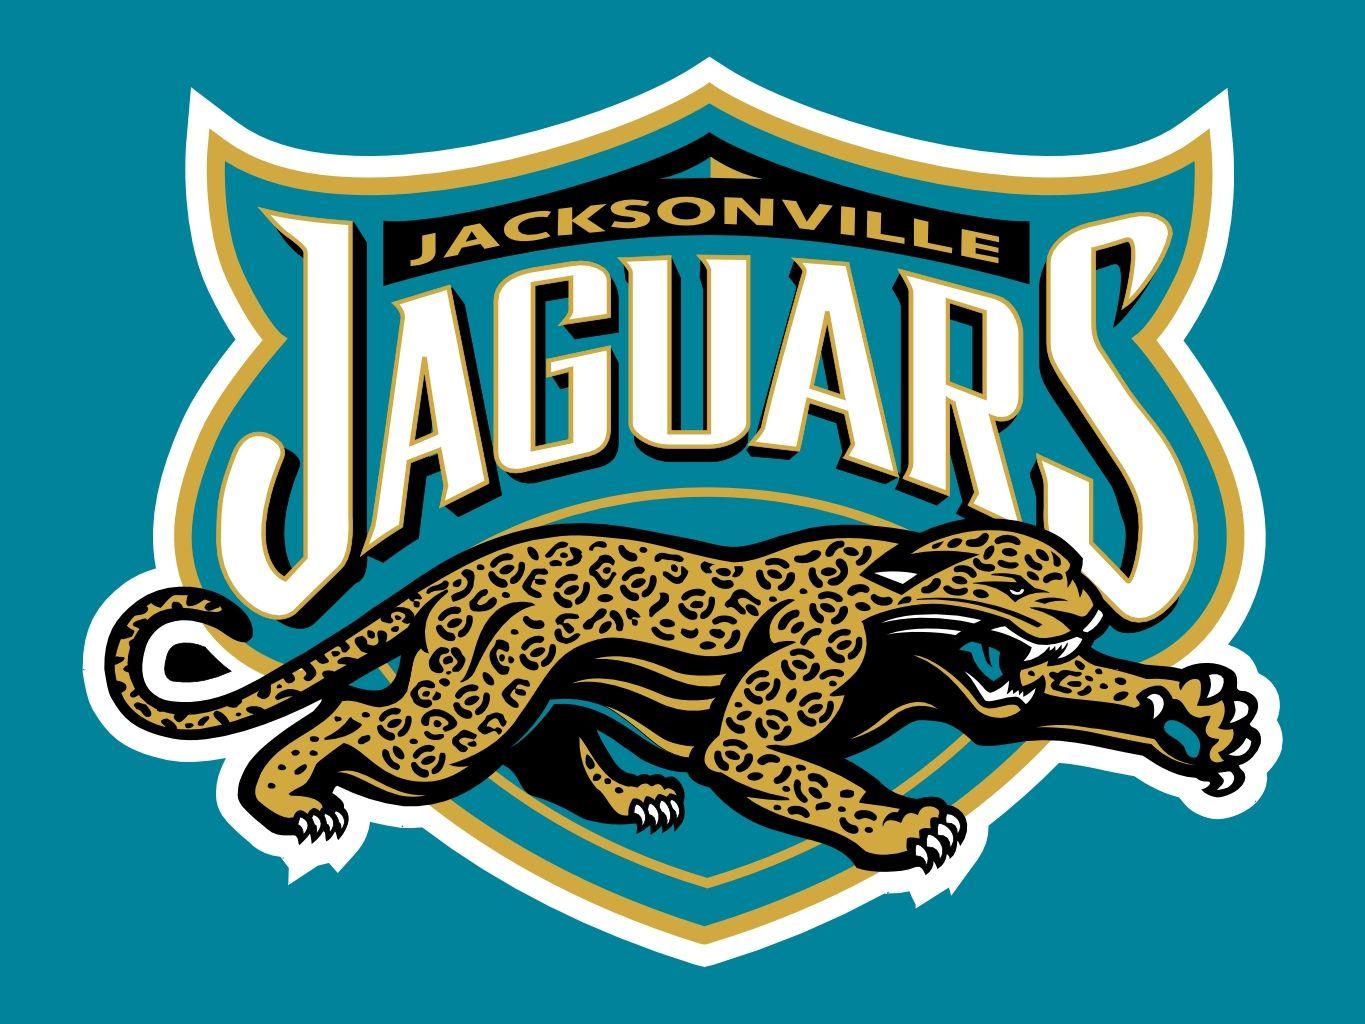 NFL Jaguars Logo - jacksonville jaguars logos - Yahoo Image Search Results | NFL / NBA ...